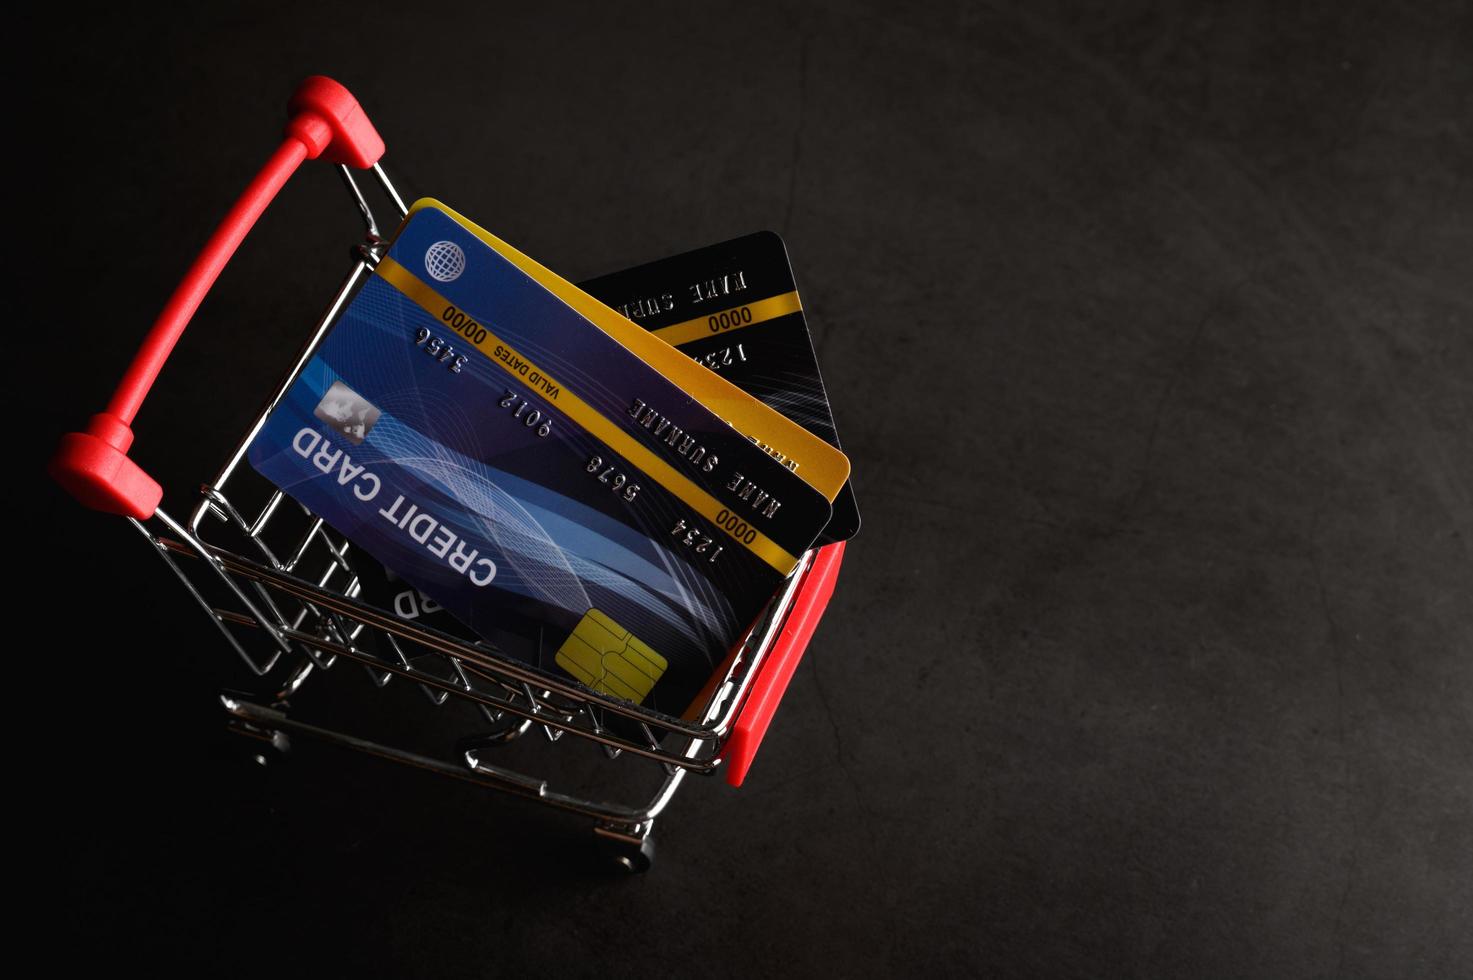 Kreditkarte auf den Warenkorb gelegt, um das Produkt zu bezahlen foto